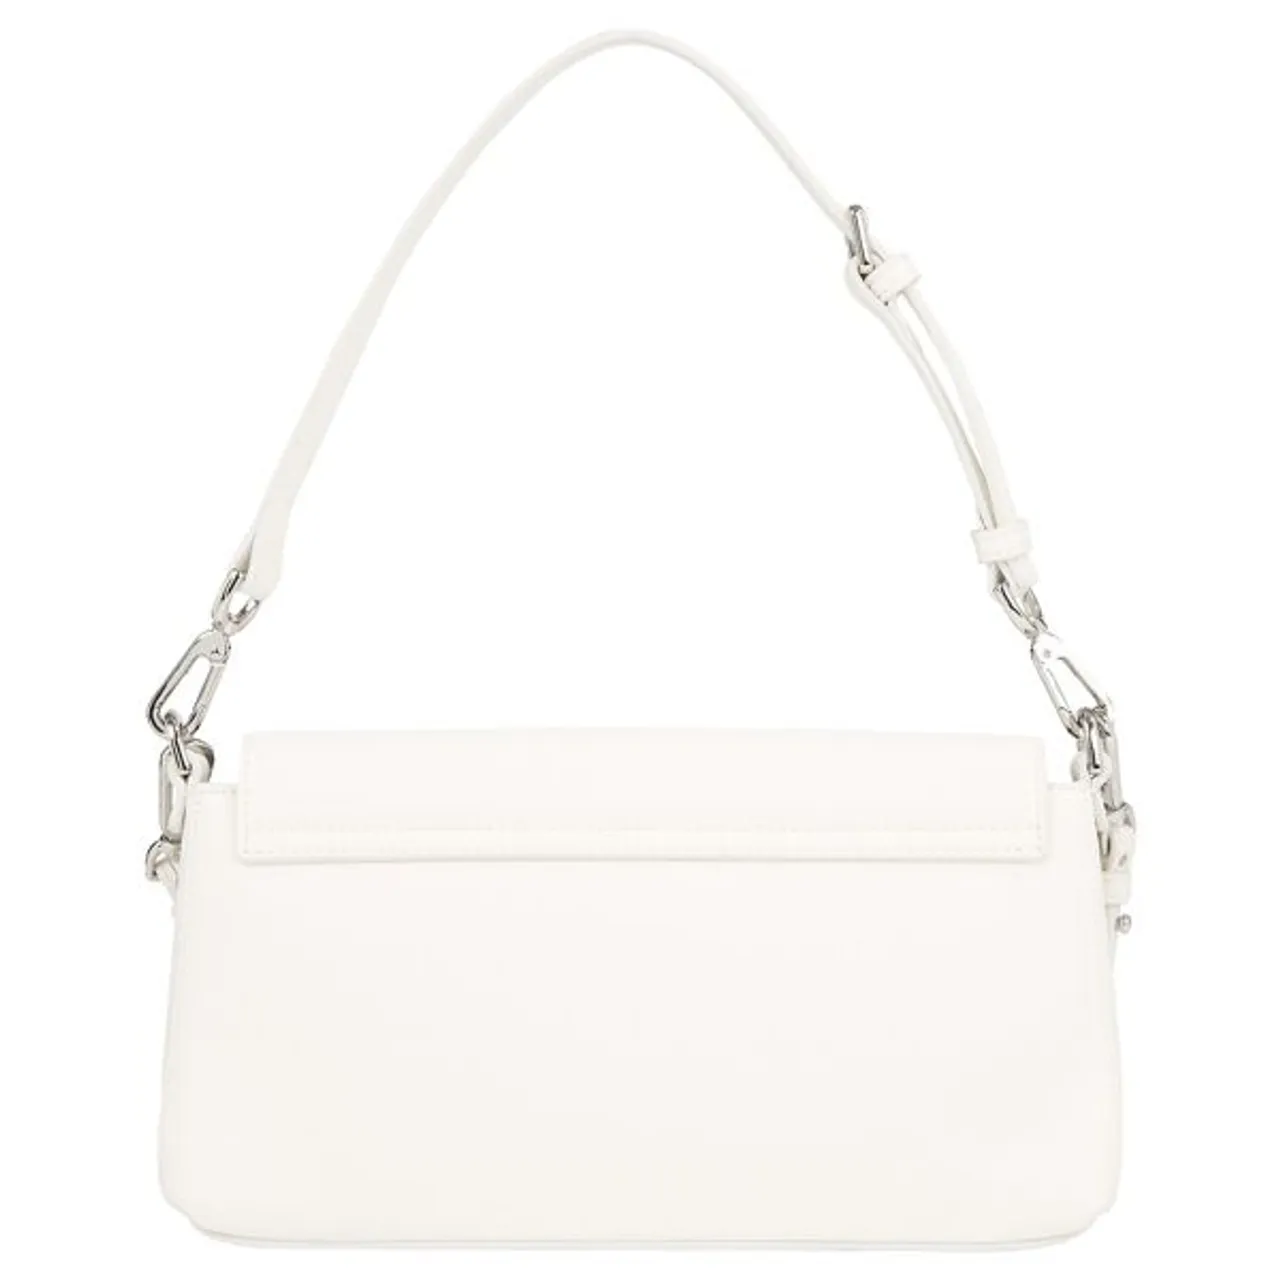 Schultertasche CALVIN KLEIN "CK MUST SHOULDER BAG" Gr. B/H/T: 26,5 cm x 14 cm x 6 cm, weiß (bright white) Damen Taschen Handtaschen Handtasche Tasche...